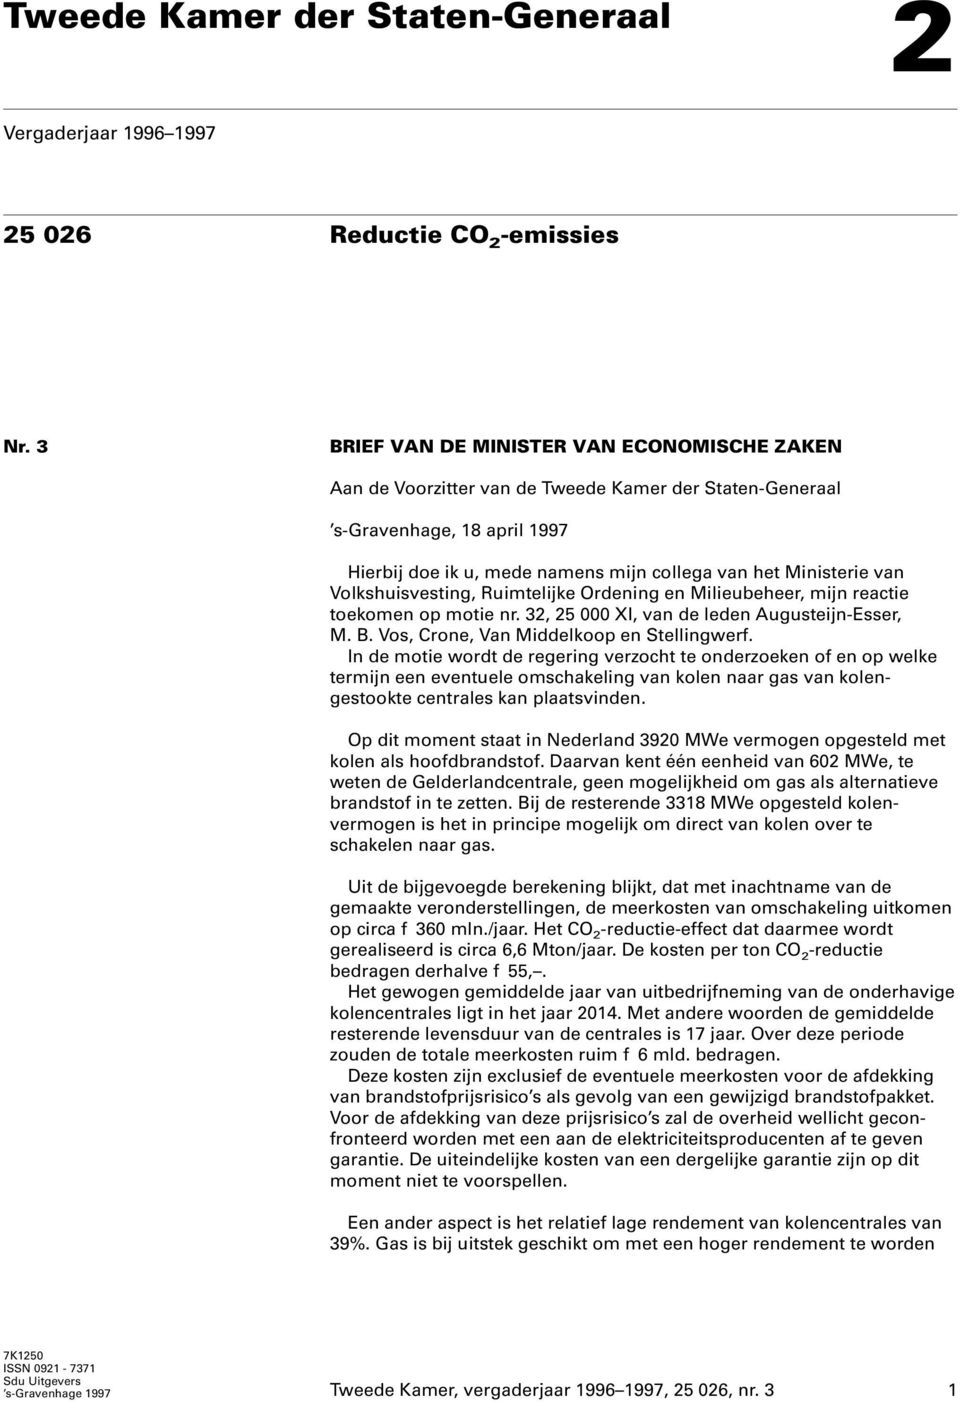 Volkshuisvesting, Ruimtelijke Ordening en Milieubeheer, mijn reactie toekomen op motie nr. 32, 25 000 XI, van de leden Augusteijn-Esser, M. B. Vos, Crone, Van Middelkoop en Stellingwerf.